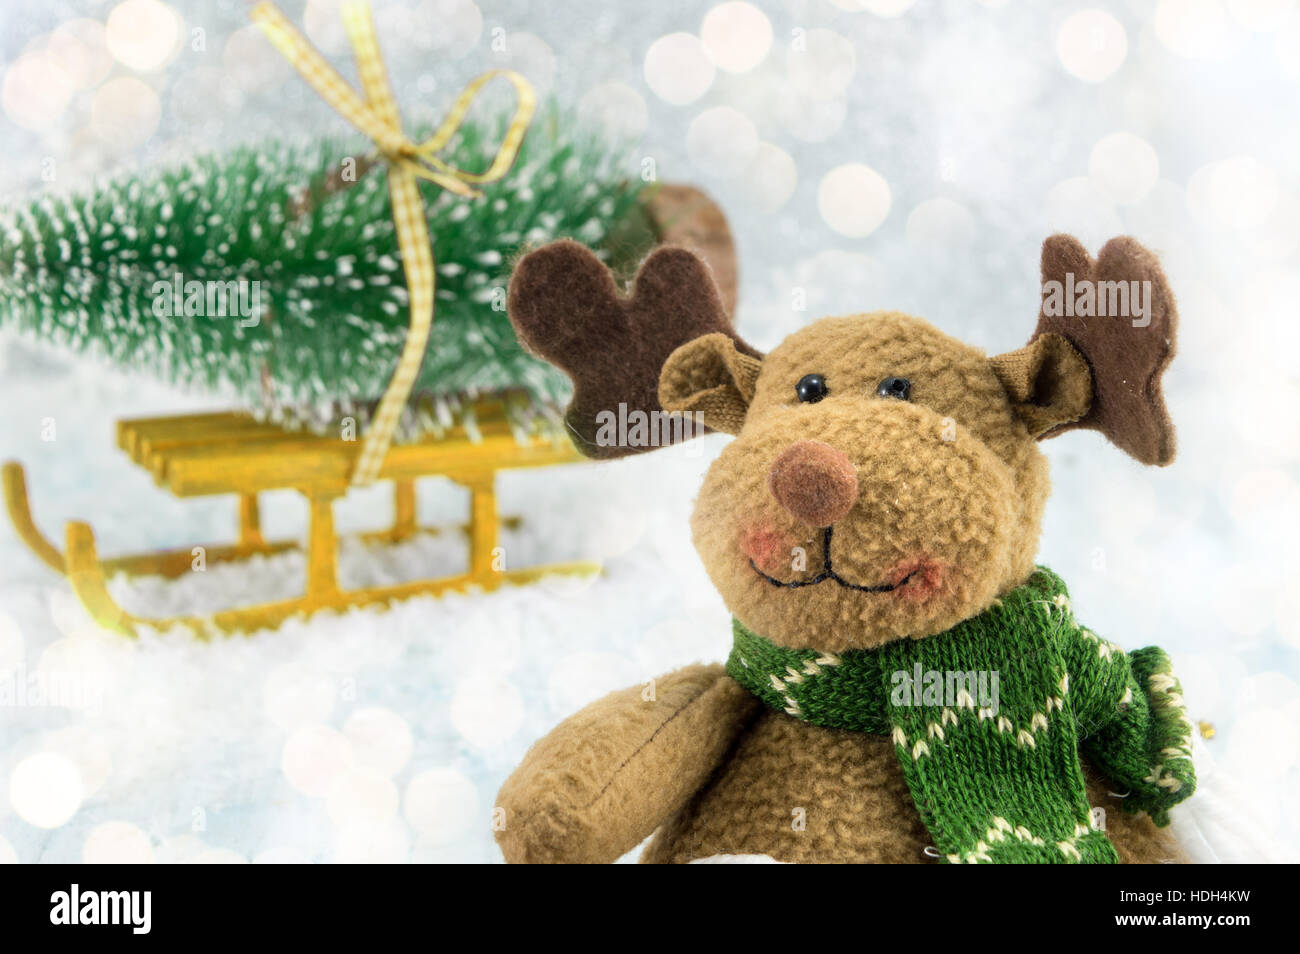 Renos de juguete y un árbol de navidad en trineos cubierto con nieve Foto de stock